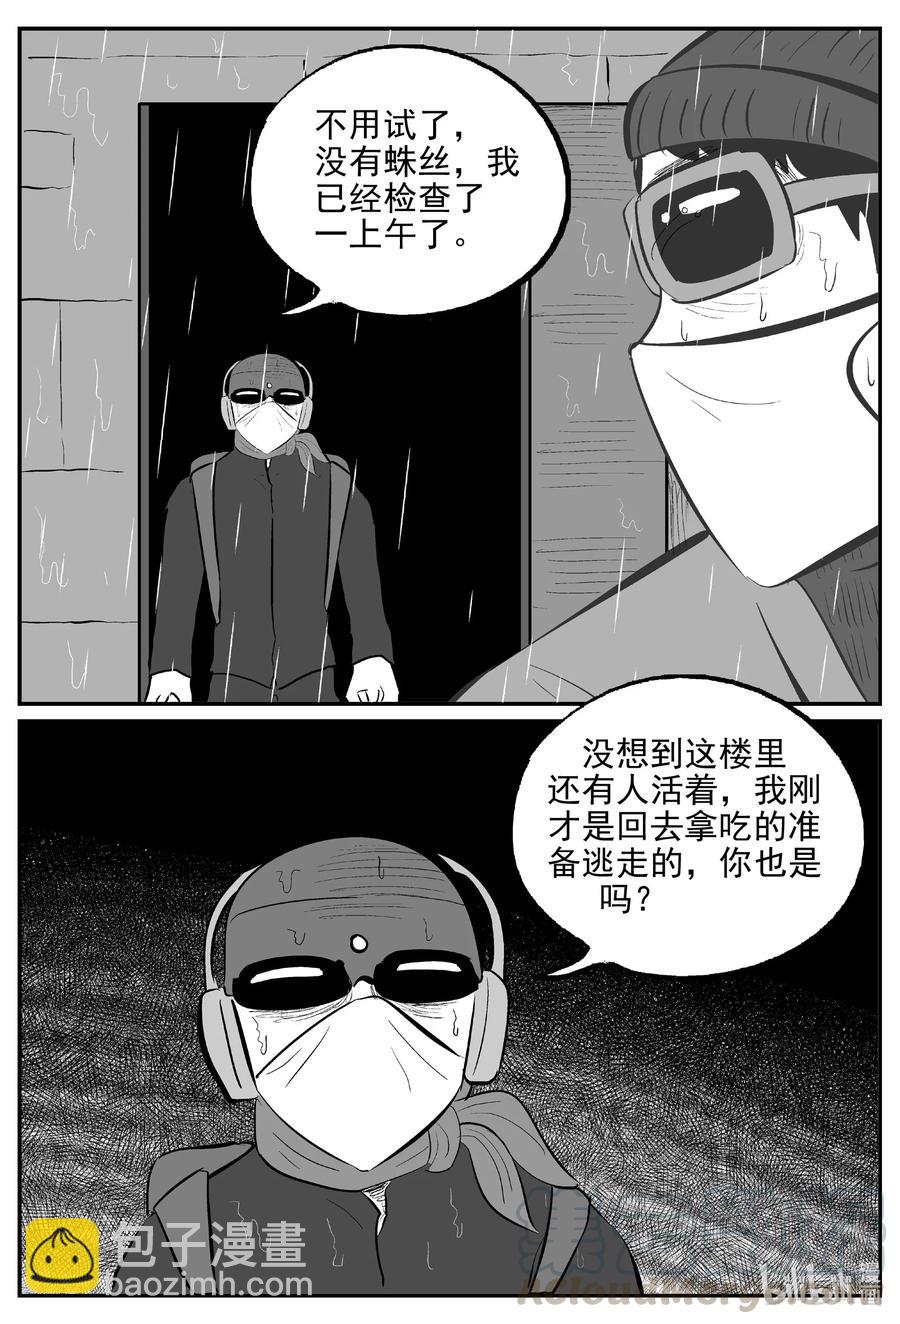 小智怪談 - 615 22世紀殺人網絡 - 1